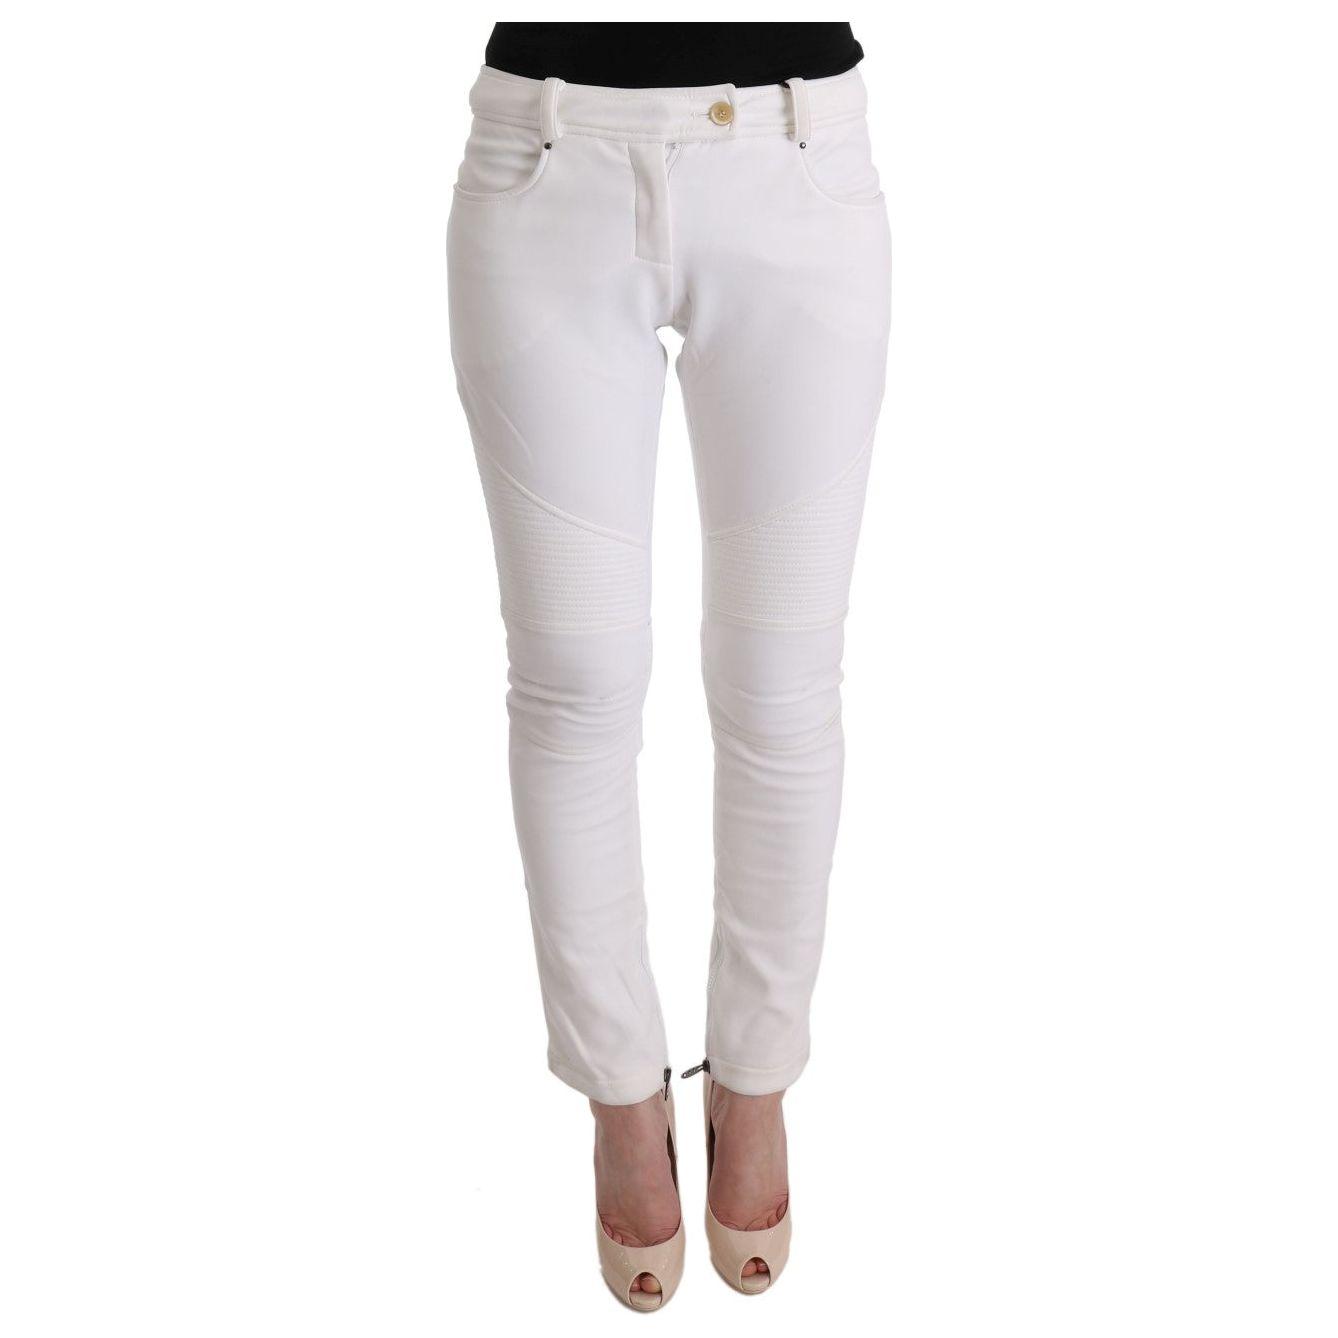 Ermanno Scervino Chic White Slim Fit Cotton Pants white-cotton-slim-fit-casual-pants-1 449212-white-cotton-slim-fit-casual-pants-2.jpg